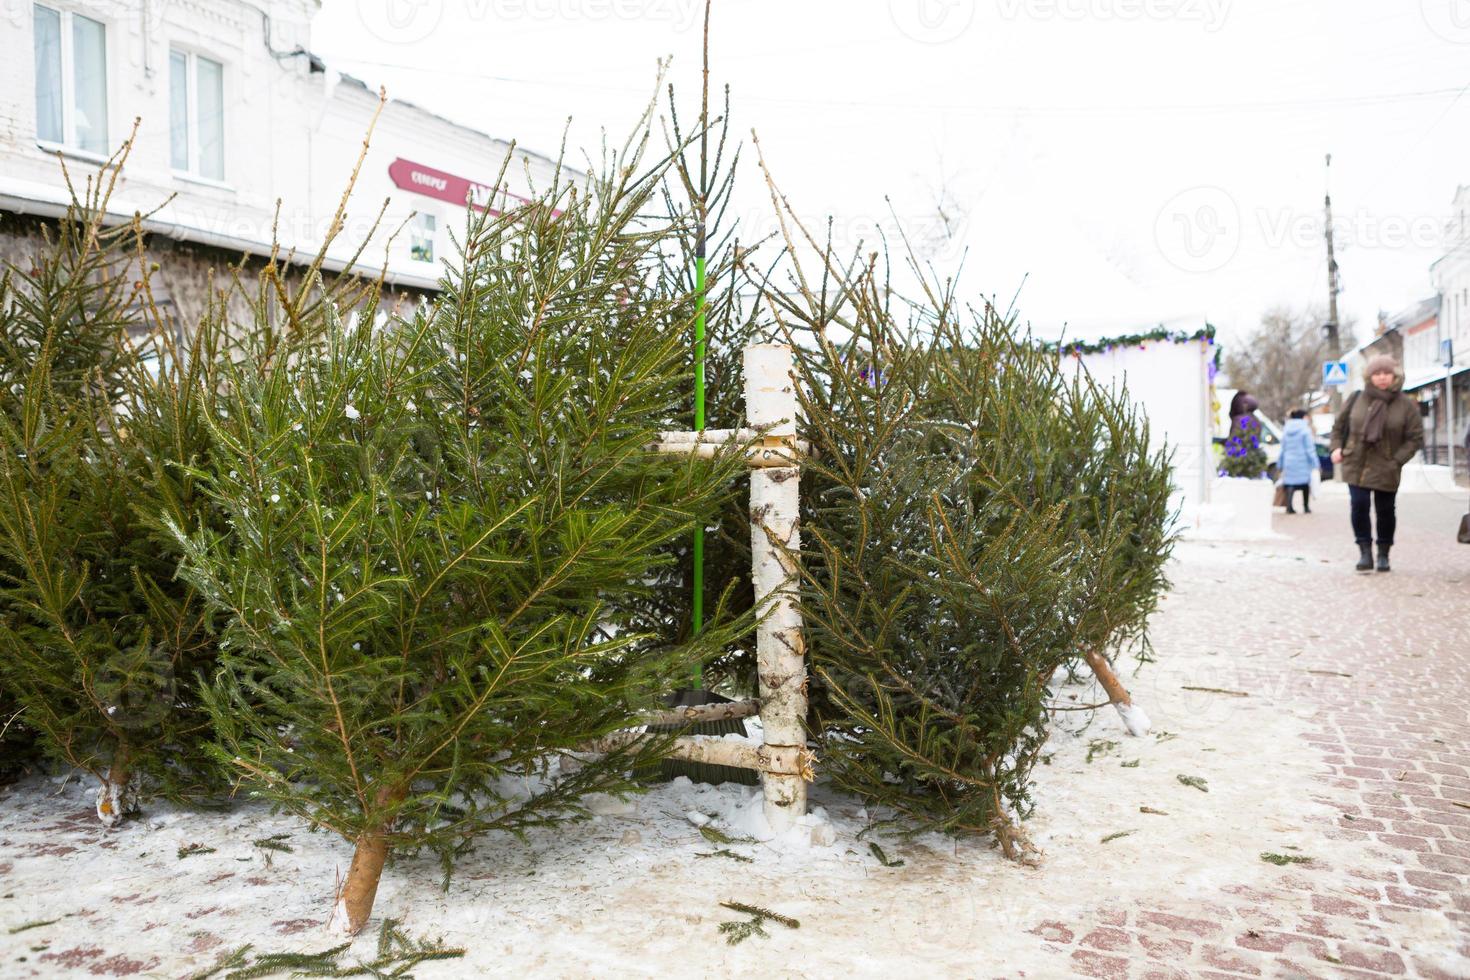 weihnachtsmarkt mit lebenden weihnachtsbäumen auf der straße der stadt. Silvesterstimmung, Schnee, geschnittene Tannen und Nadelbäume werden verkauft, der Duft von Harz und Tannennadeln. Kaluga, Russland, 29. Dezember 2020 foto